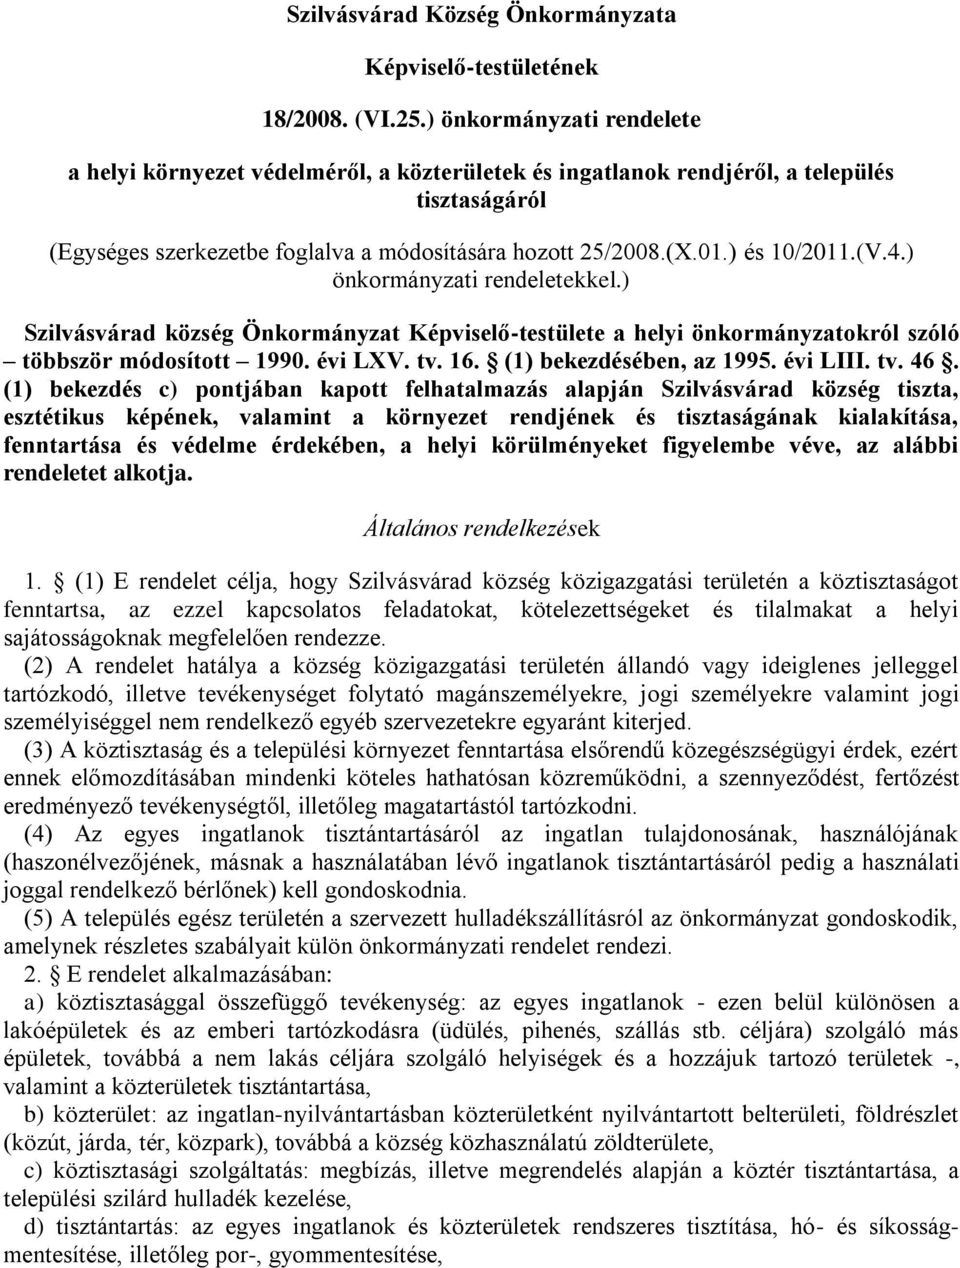 ) és 10/2011.(V.4.) önkormányzati rendeletekkel.) Szilvásvárad község Önkormányzat Képviselő-testülete a helyi önkormányzatokról szóló többször módosított 1990. évi LXV. tv. 16.